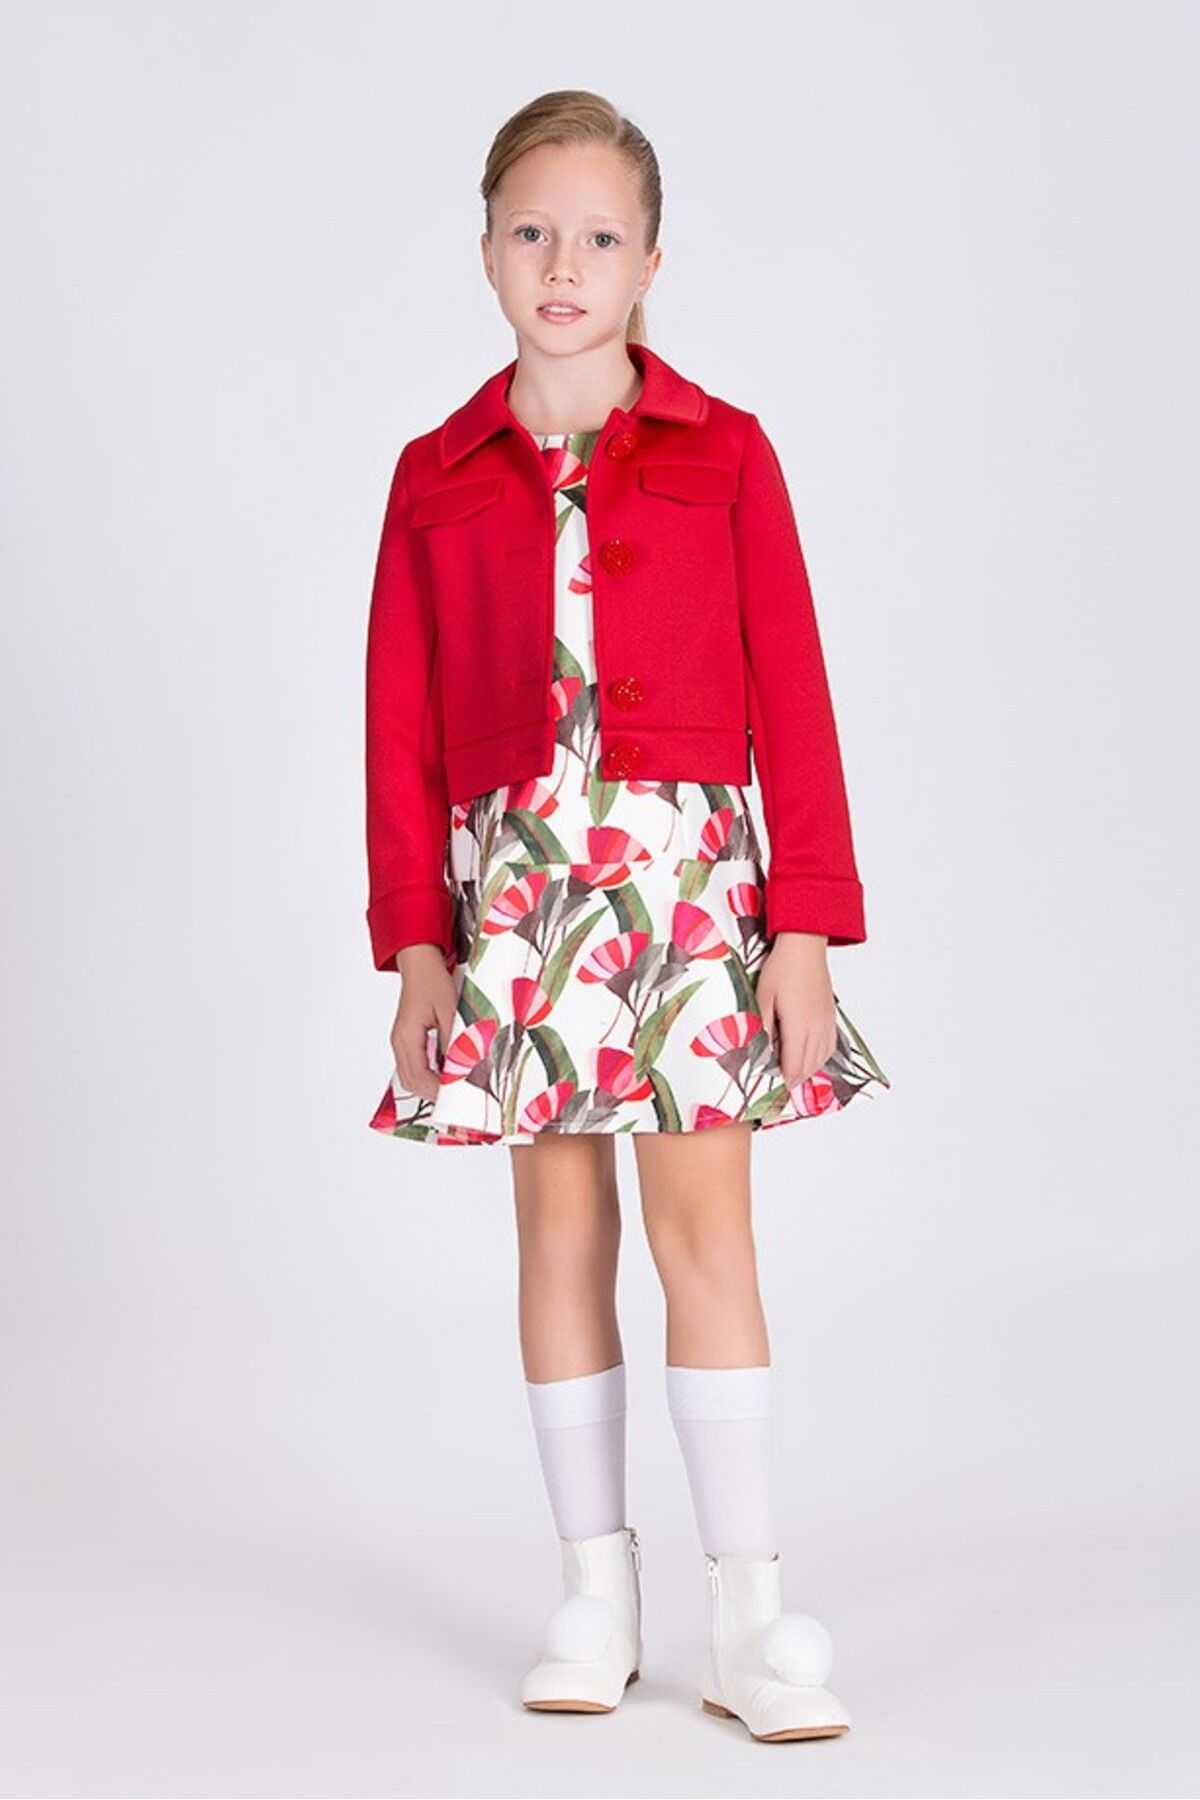 Goose Kız Çocuk Klasik Kırmızı Ceket